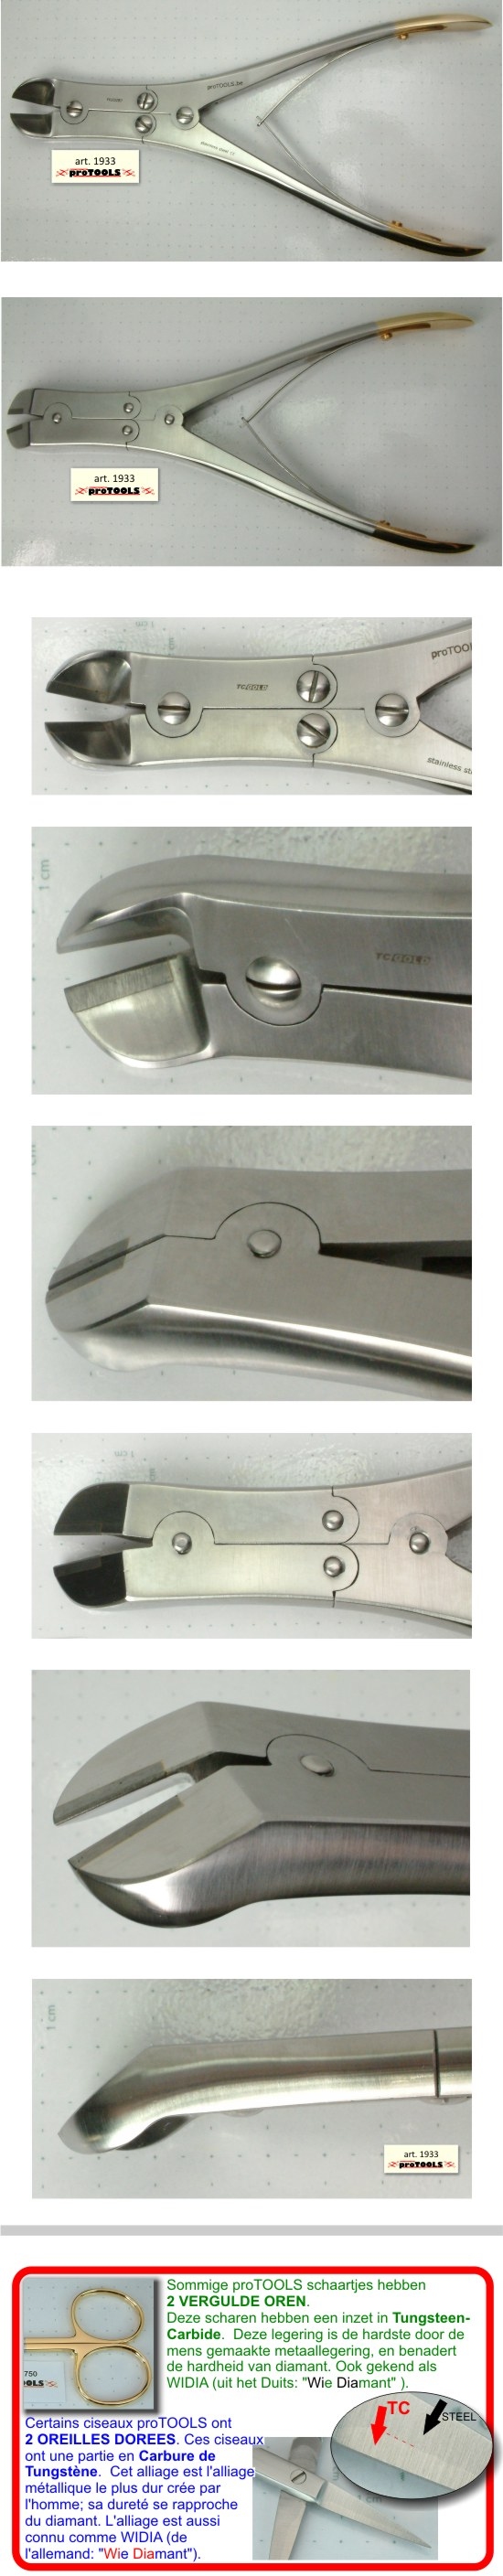 Pinces TC - Pince coupante - 20 cm - angulaire